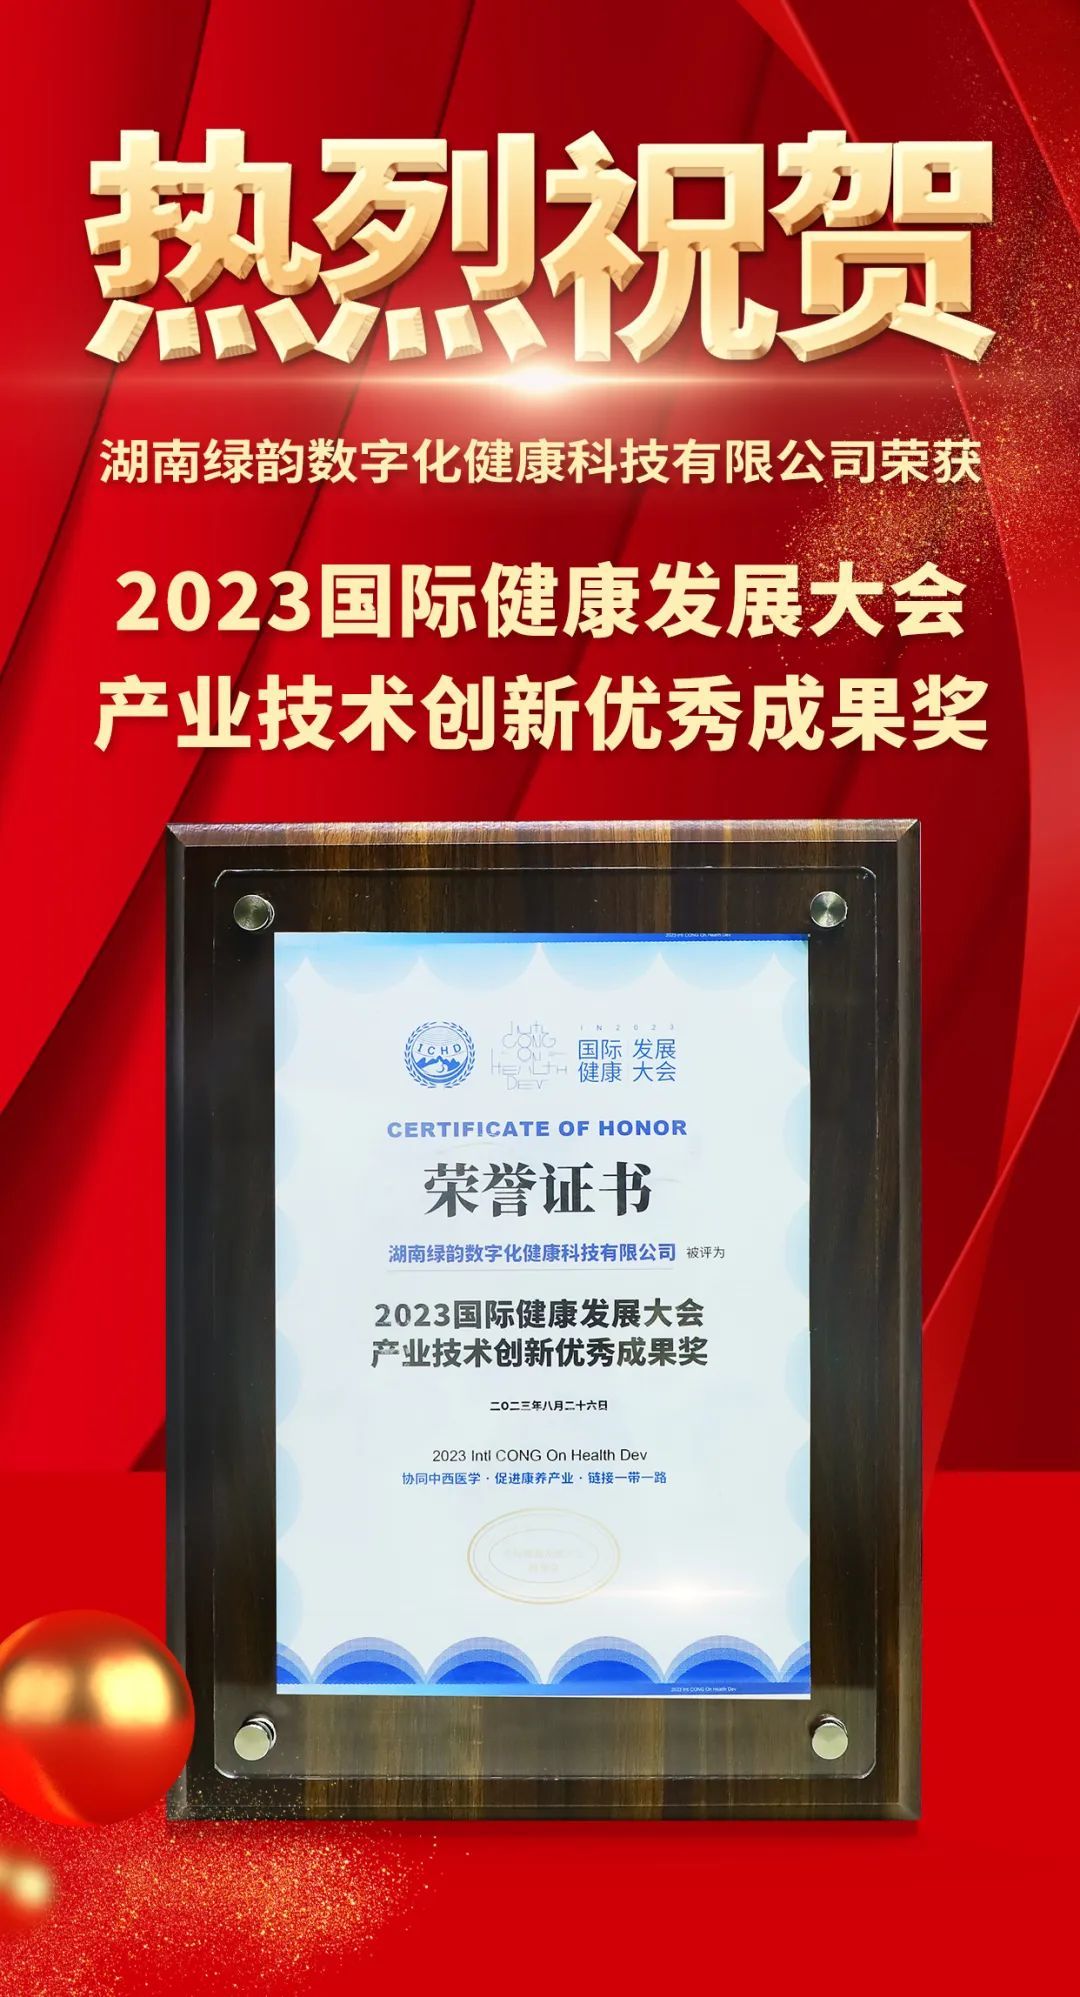 绿韵数字化受邀出席2023国家健康发展大会并荣获重磅奖项